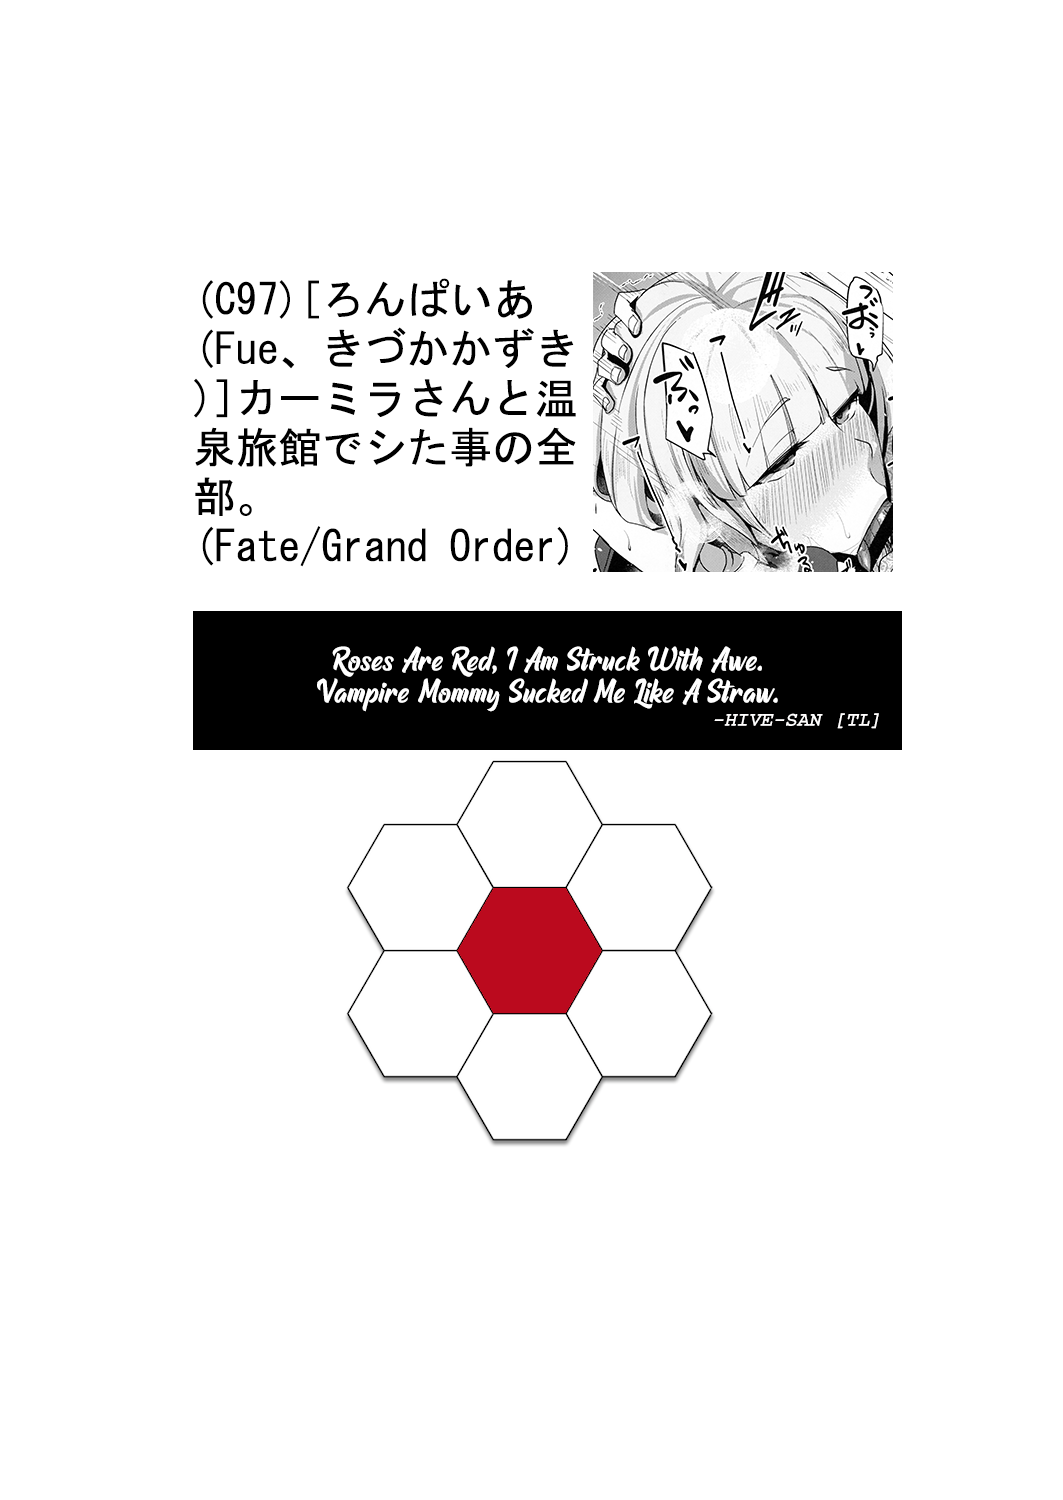 (C97) [ろんぱいあ (Fue、きづかかずき)] カーミラさんと温泉旅館でシた事の全部。 (Fate/Grand Order) [英語]